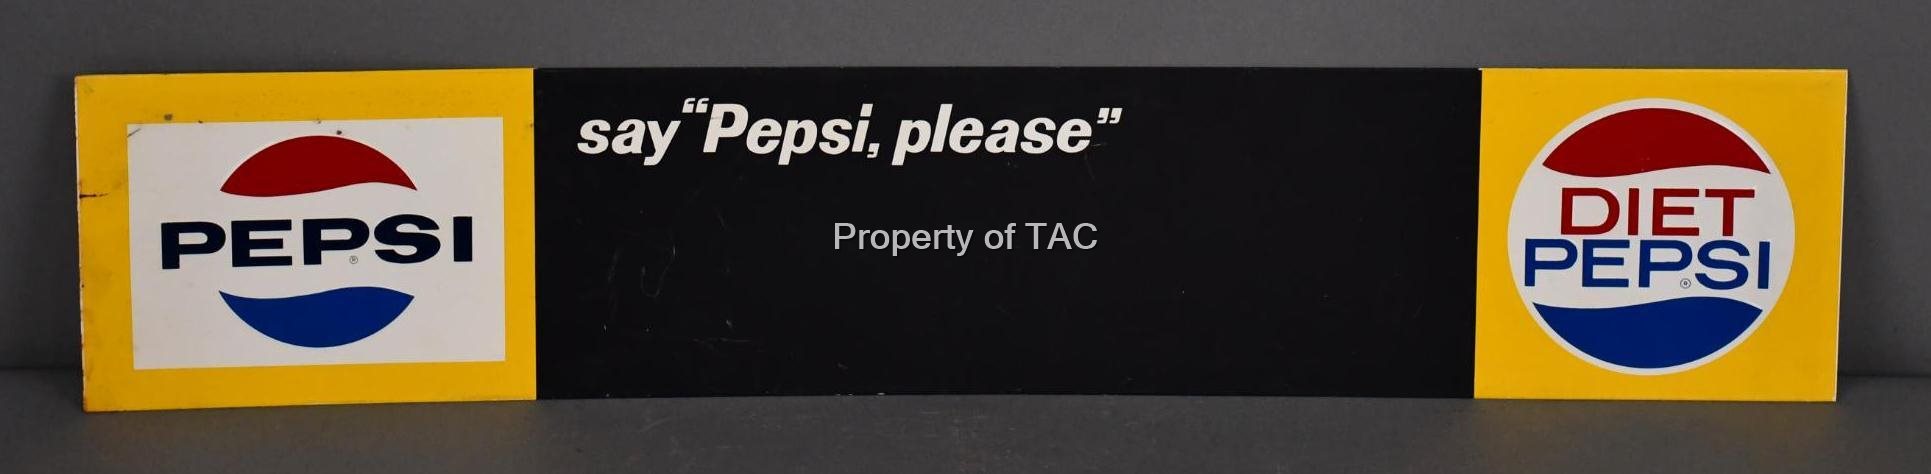 Pepsi Diet Pepsi Metal Menu Board Sign